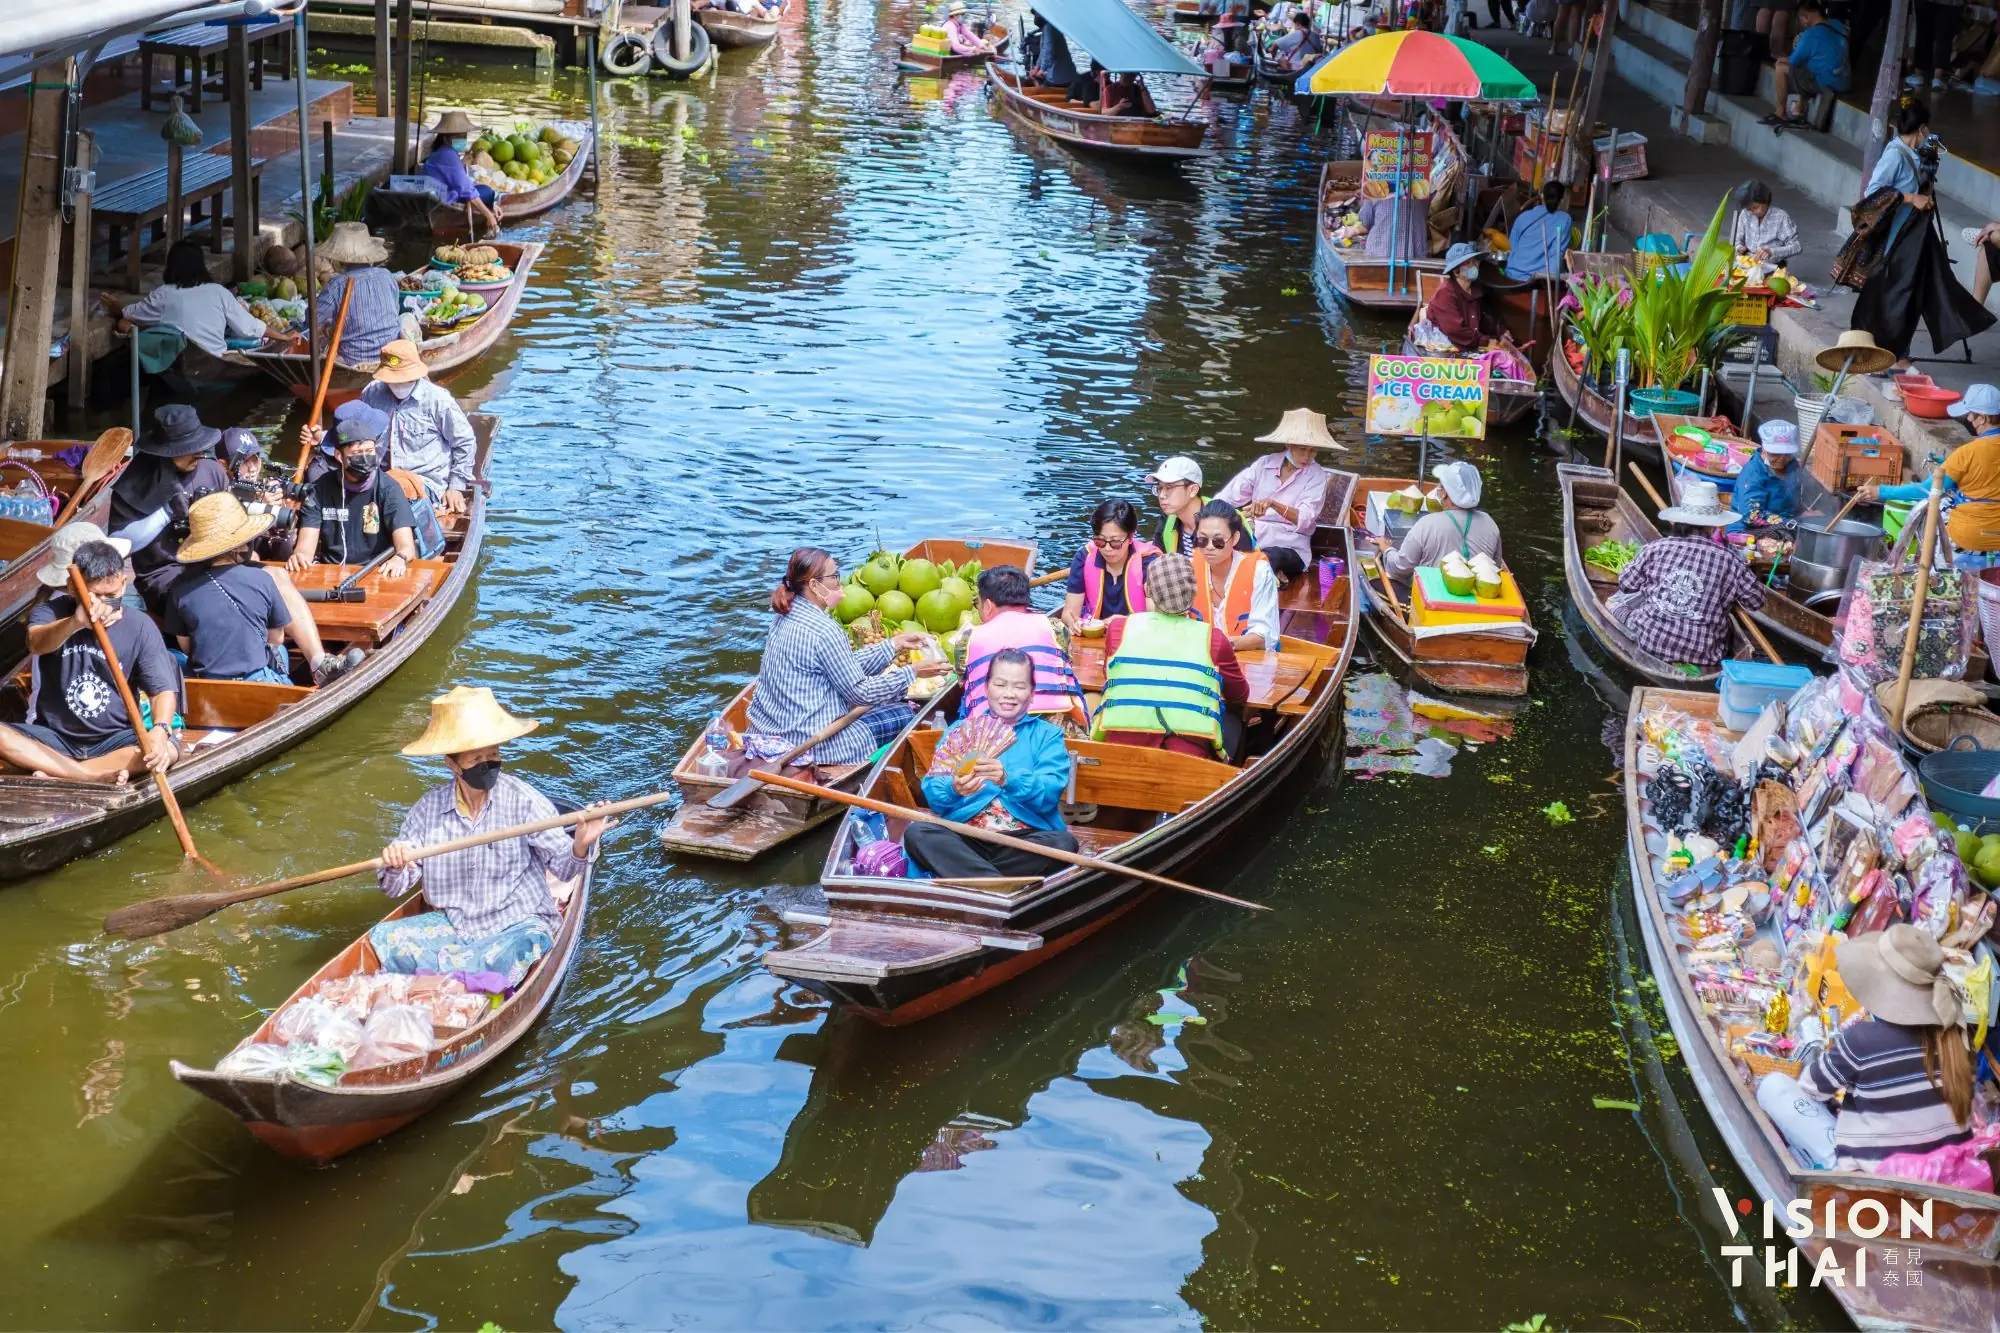 安帕瓦水上市場傳統風貌保持得很好，是曼谷人假日最愛前往的水上市場（圖片來源：Vision Thai 看見泰國）